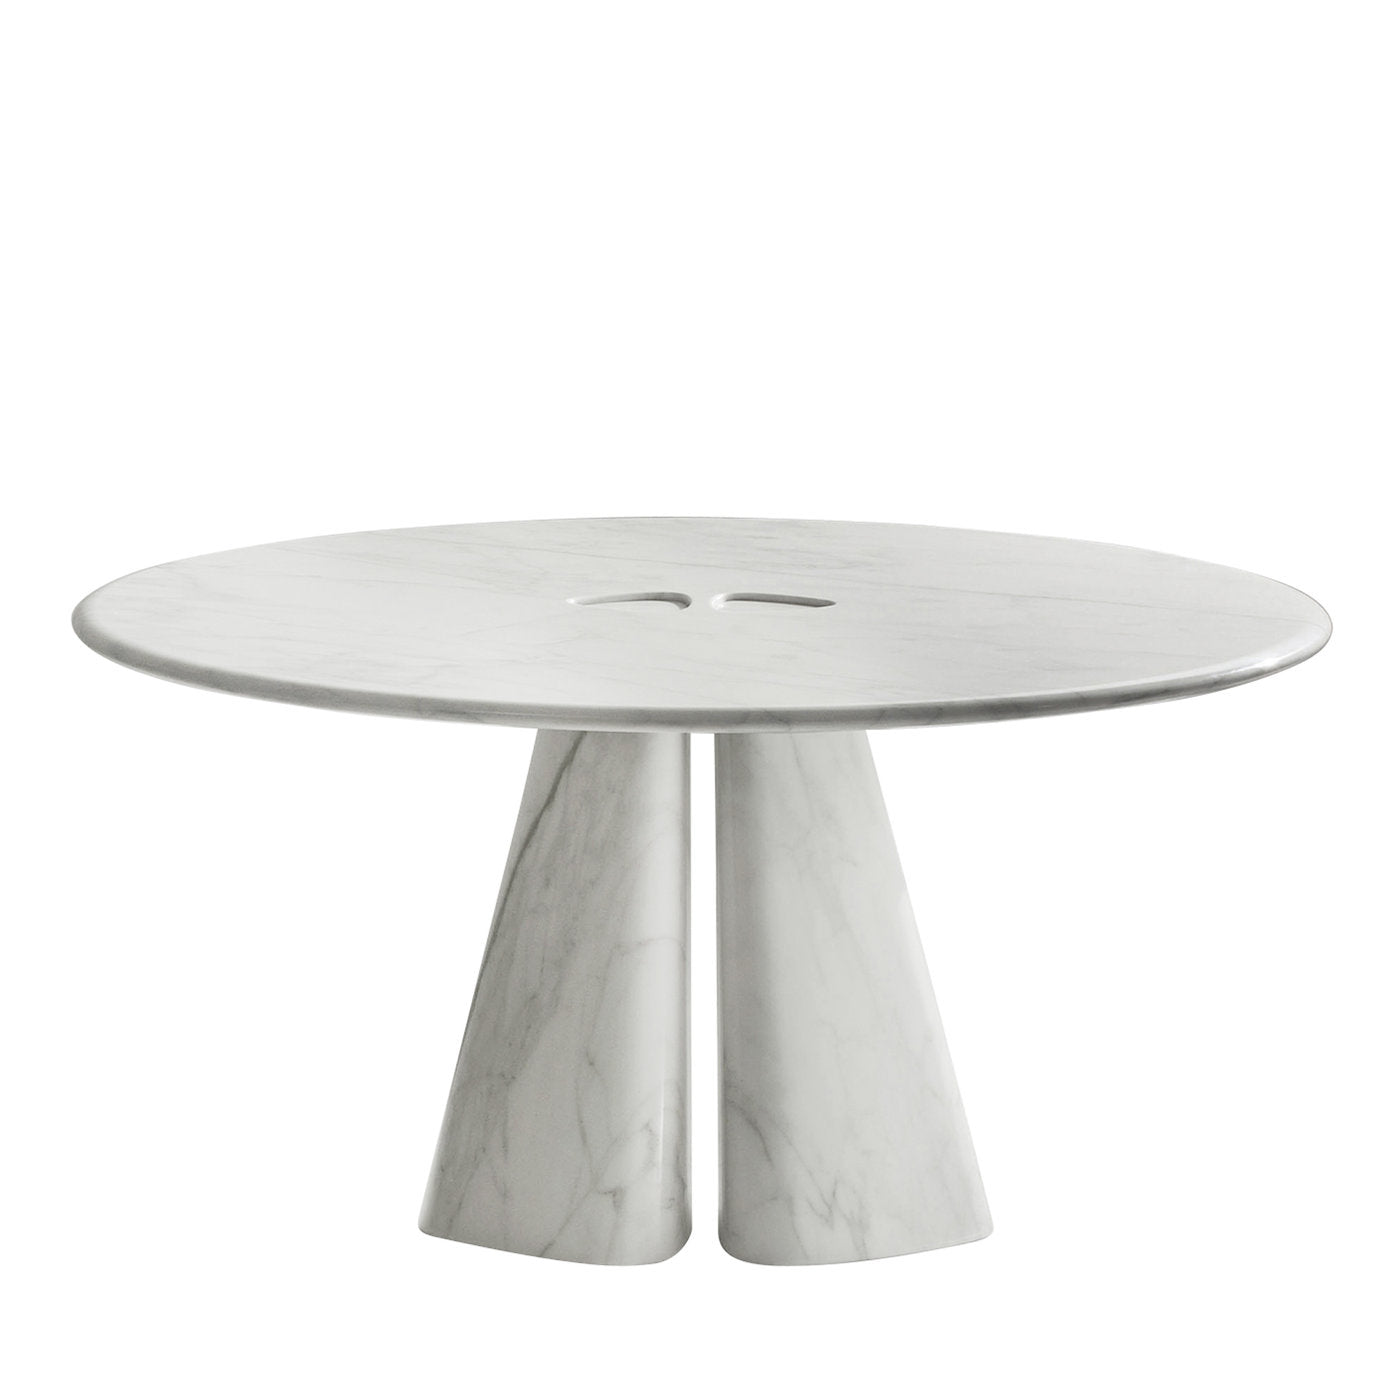 Raja Runder Tisch von Bartoli Design - Hauptansicht